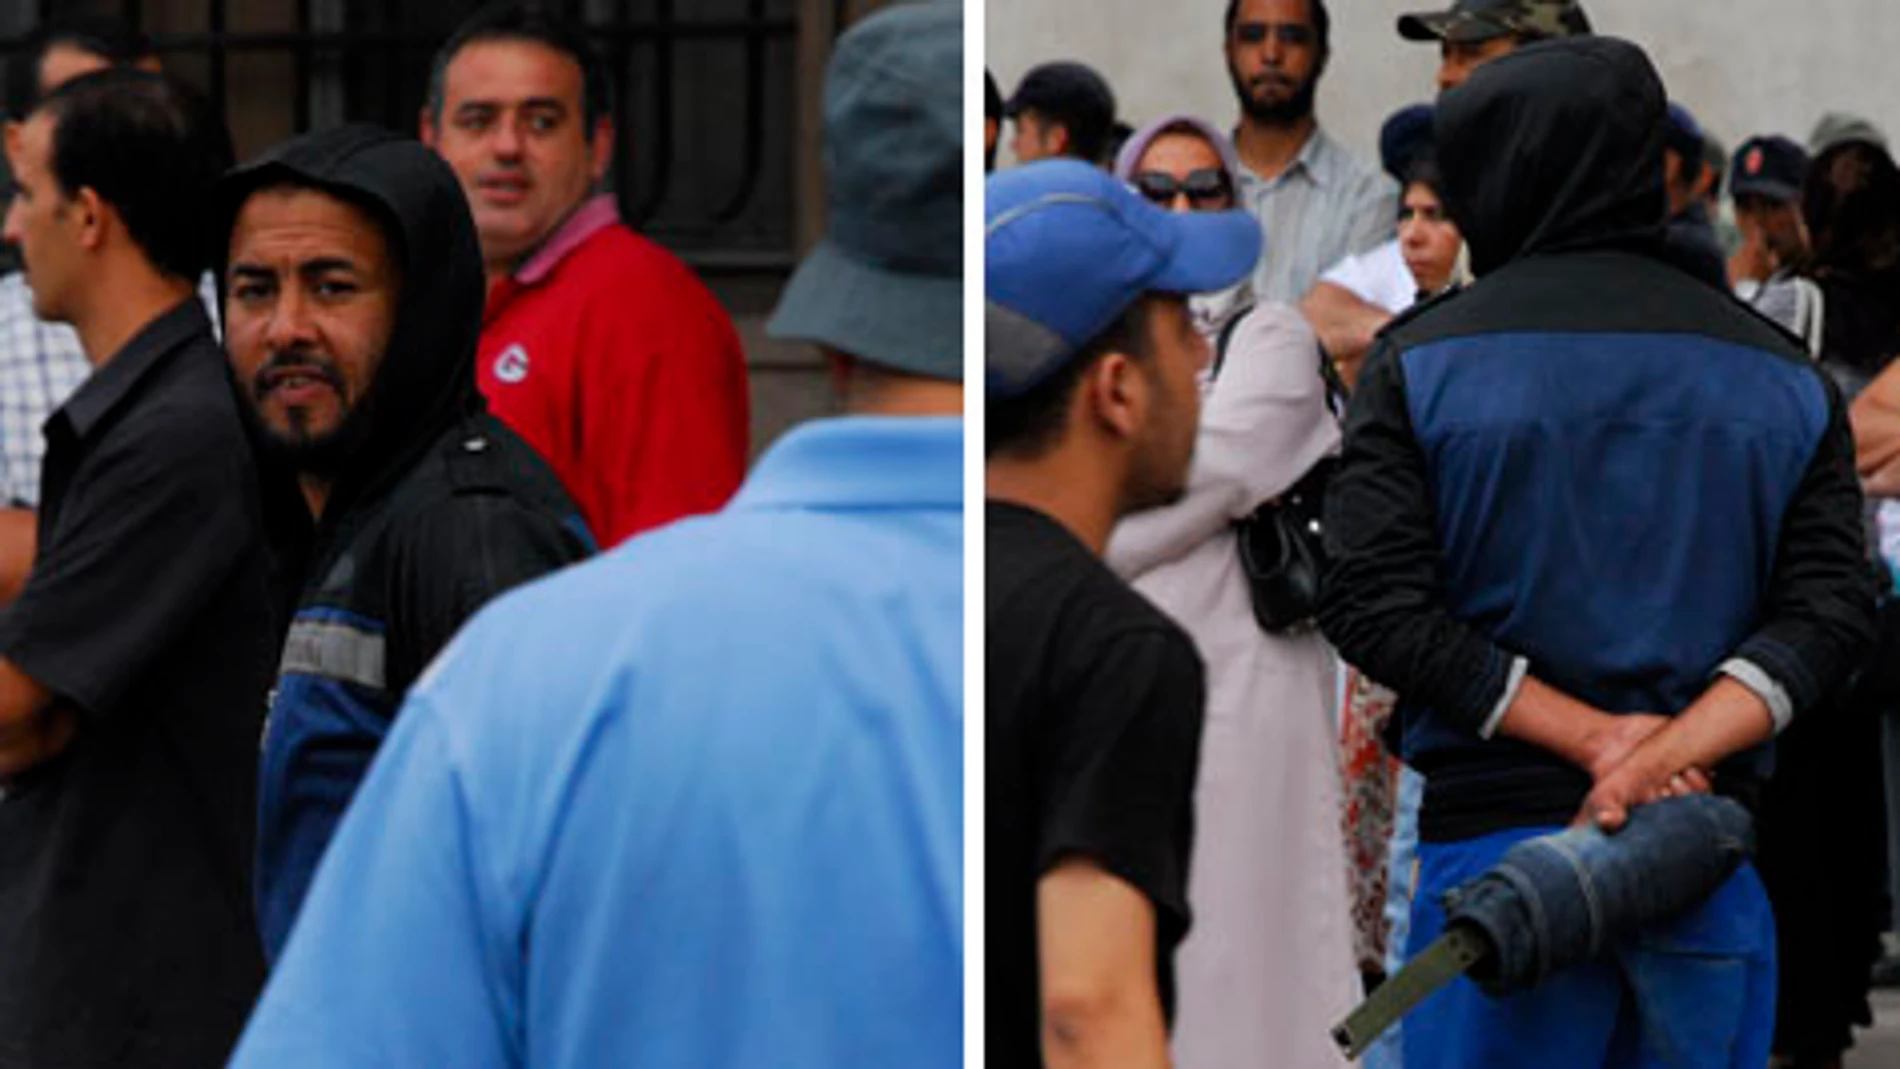 Este hombre que lleva un objeto sospechoso envuelto en un paño trató de intimidar a una periodista que cubría la manifestación convocada por el Movimiento 20 de Febrero